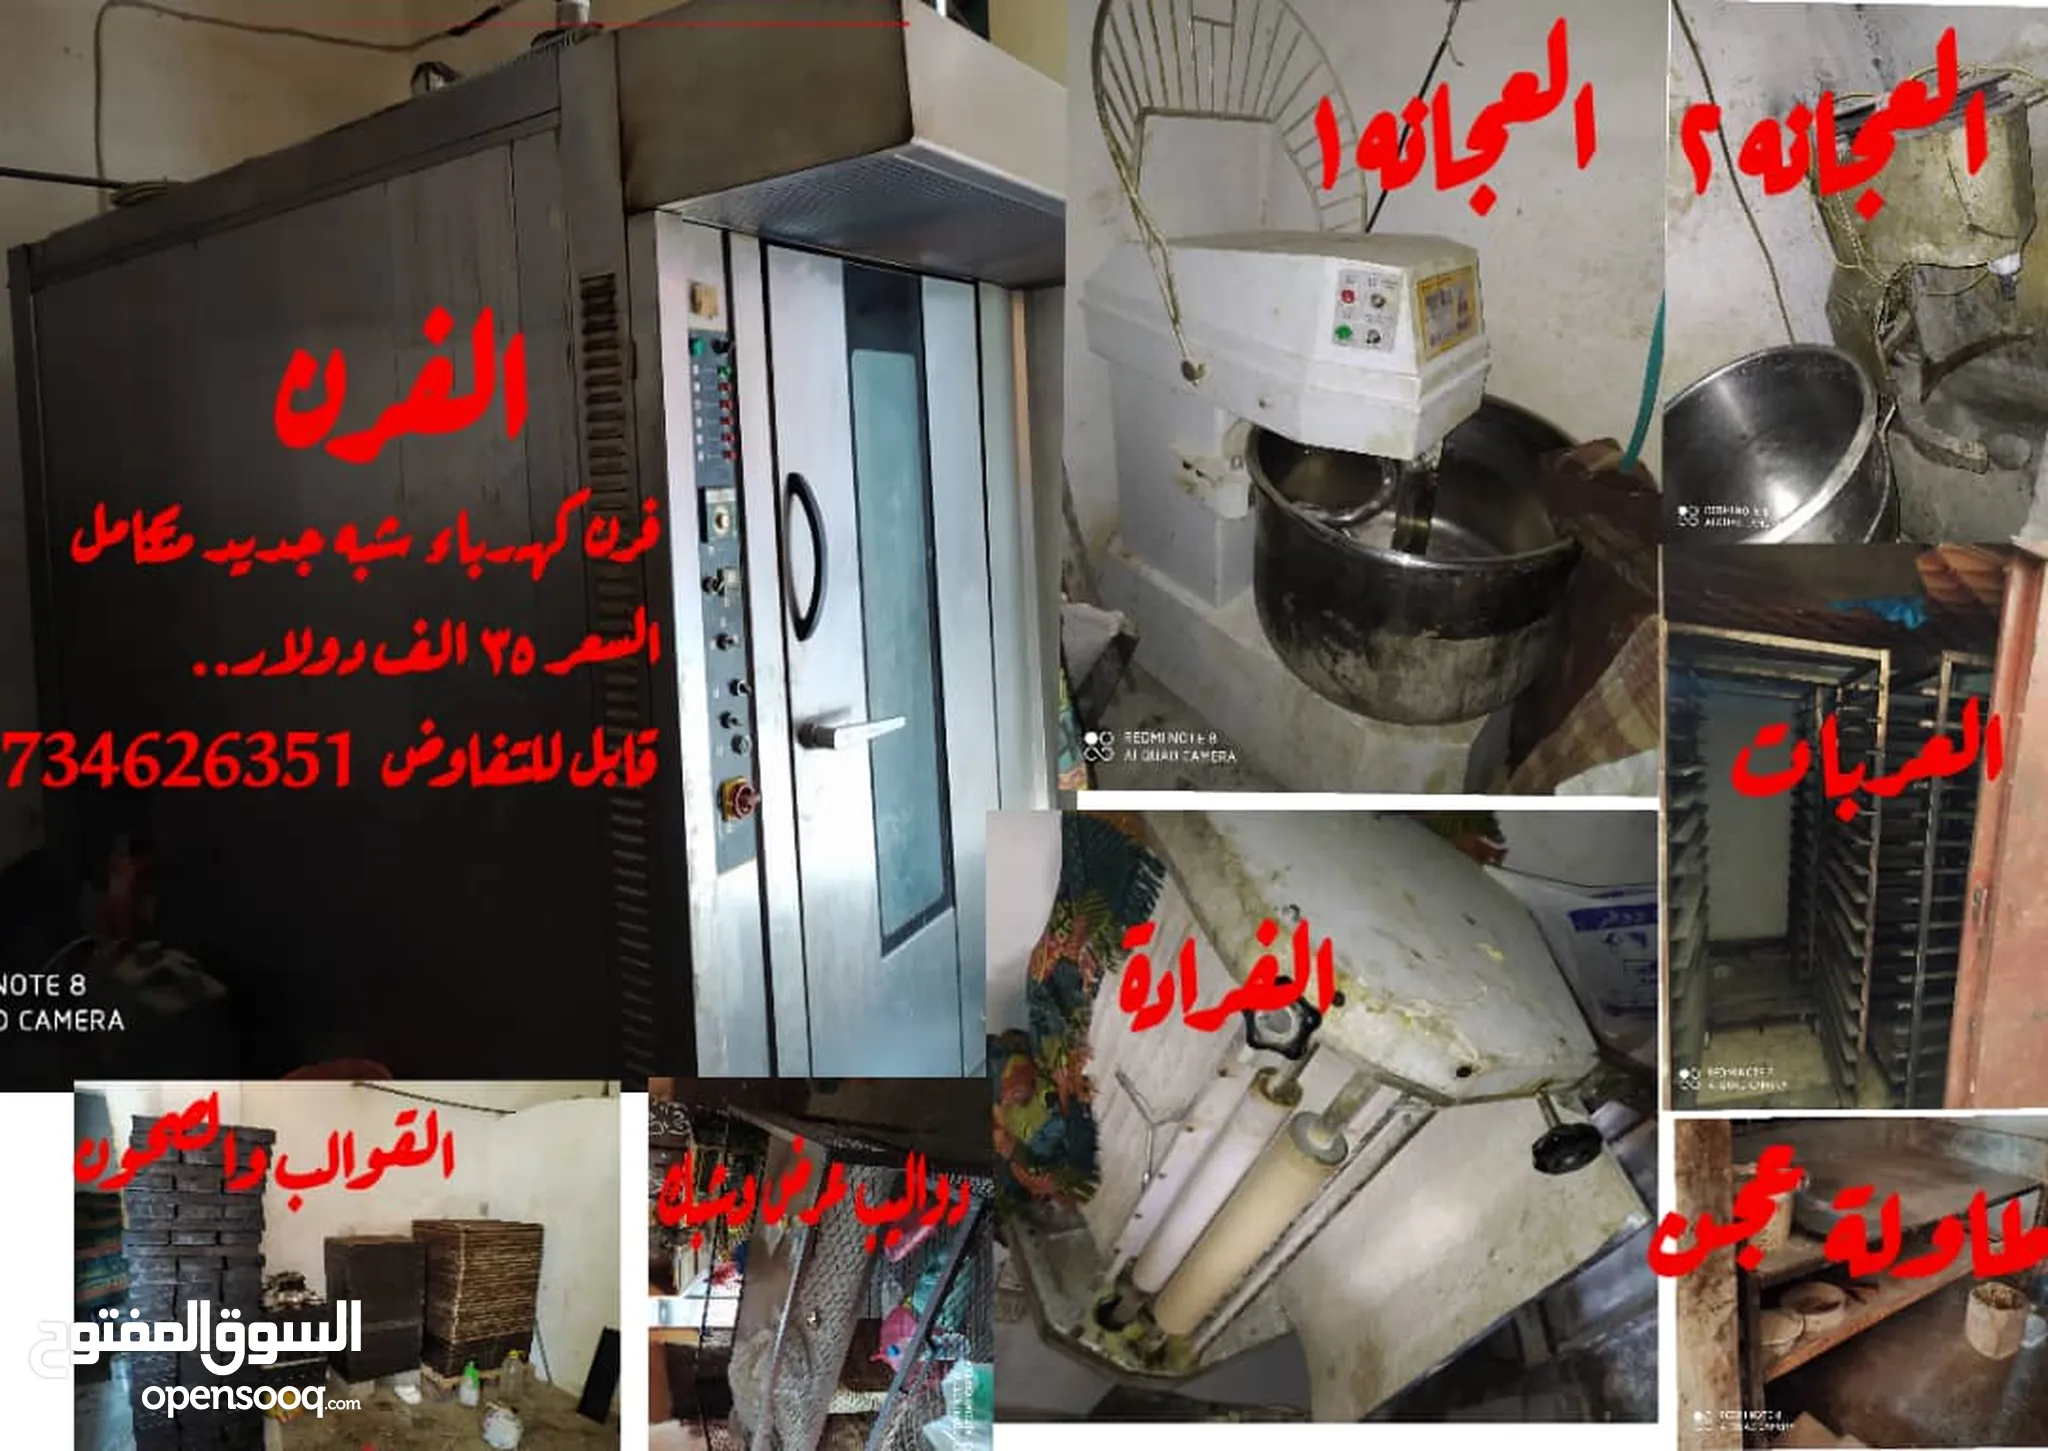 شركات - معدات مهنية : أجهزة ومعدات مطاعم : (صفحة 4) : اليمن | السوق المفتوح